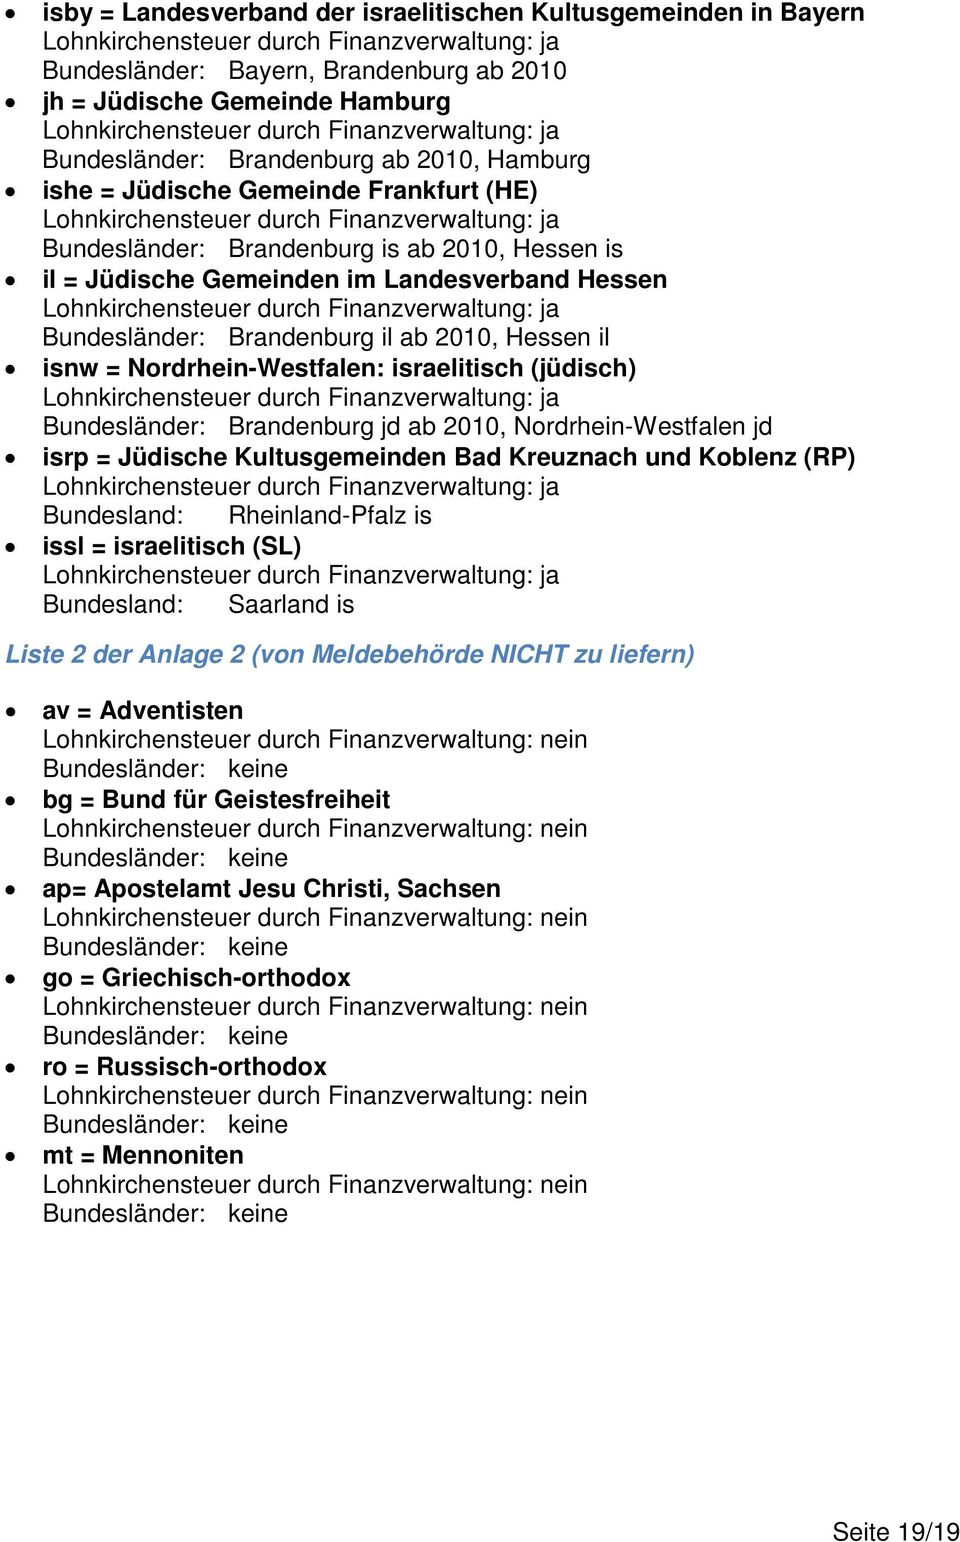 israelitisch (jüdisch) Bundesländer: Brandenburg jd ab 2010, Nordrhein-Westfalen jd isrp = Jüdische Kultusgemeinden Bad Kreuznach und Koblenz (RP) Bundesland: Rheinland-Pfalz is issl = israelitisch